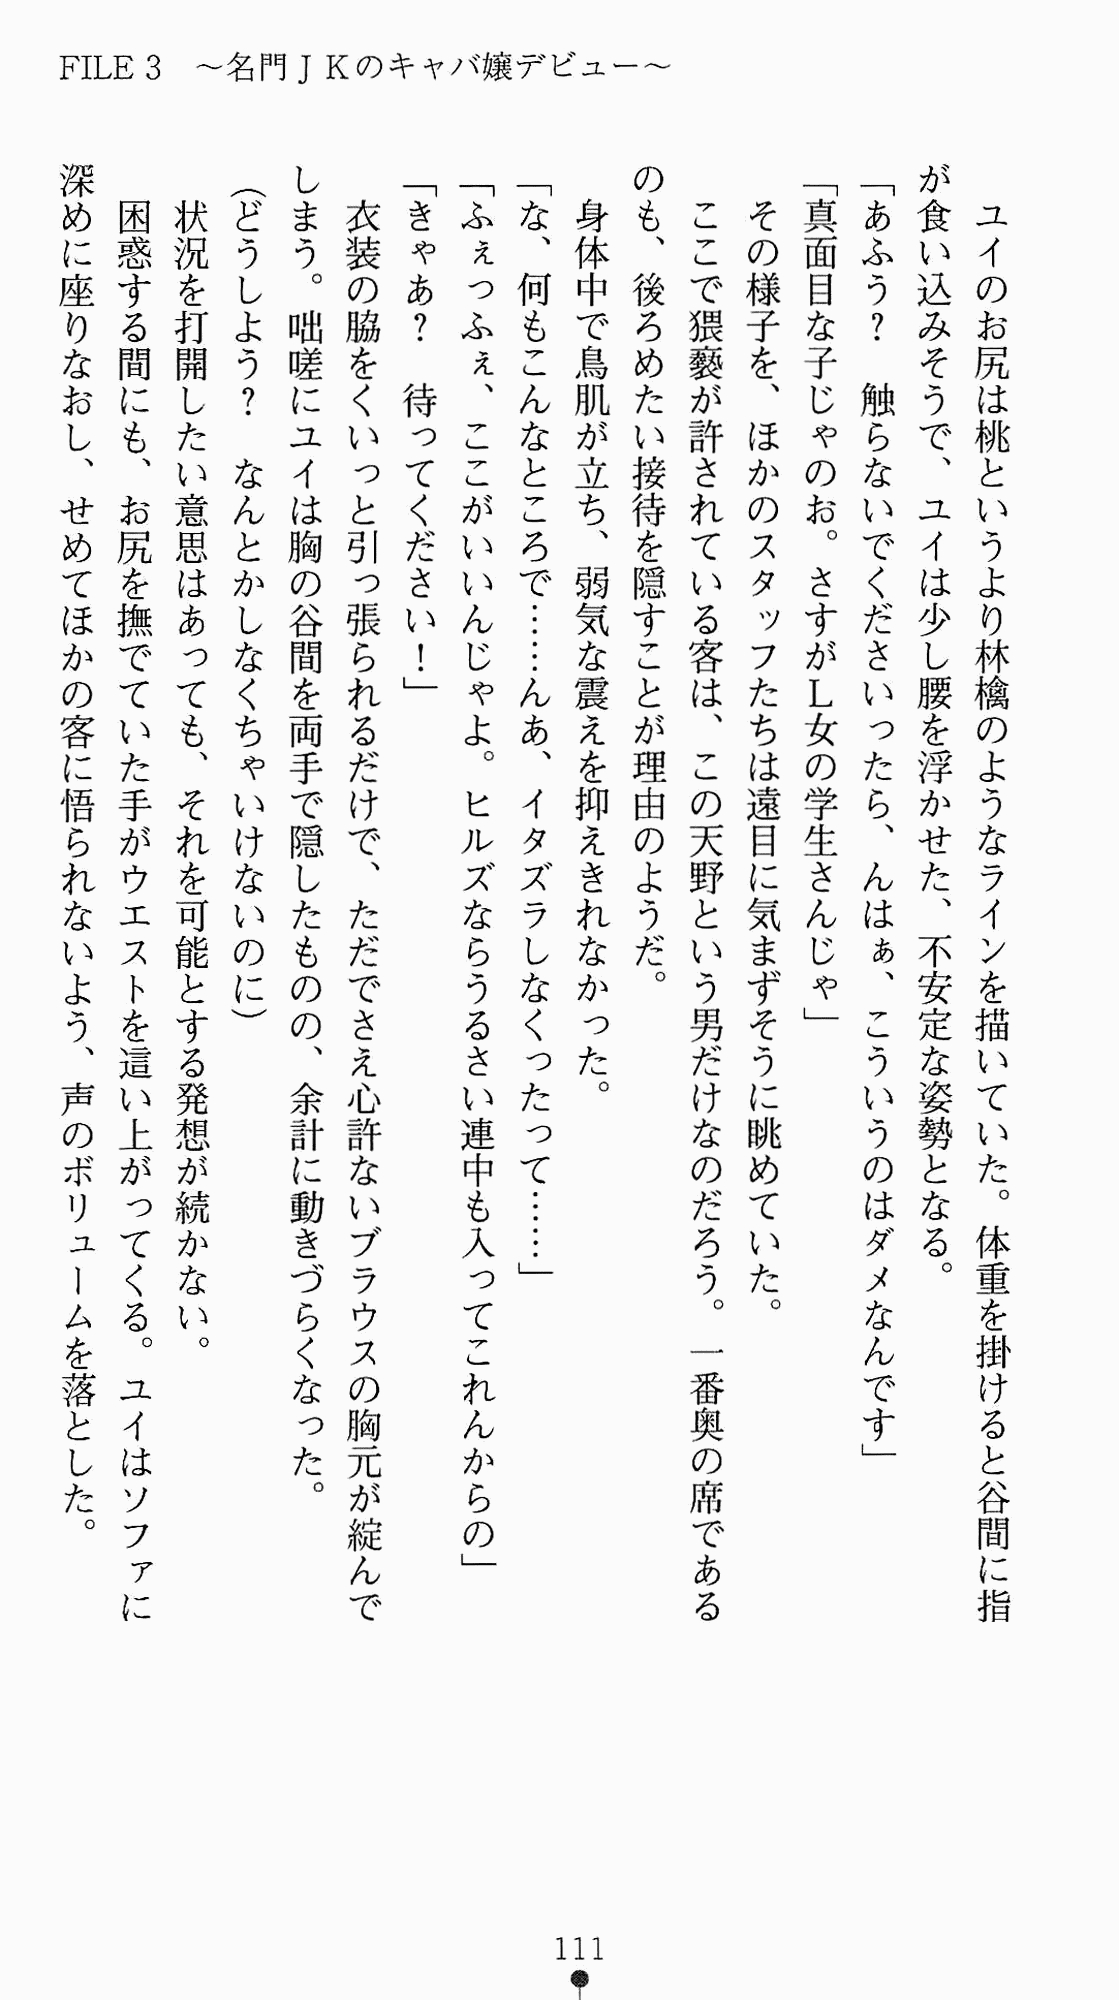 [Kagura Youko, Takahama Tarou] Shiritsu Tantei Takasuga Erika no Jikenbo 2 - Chijouha AV Satsuei 24-ji 126